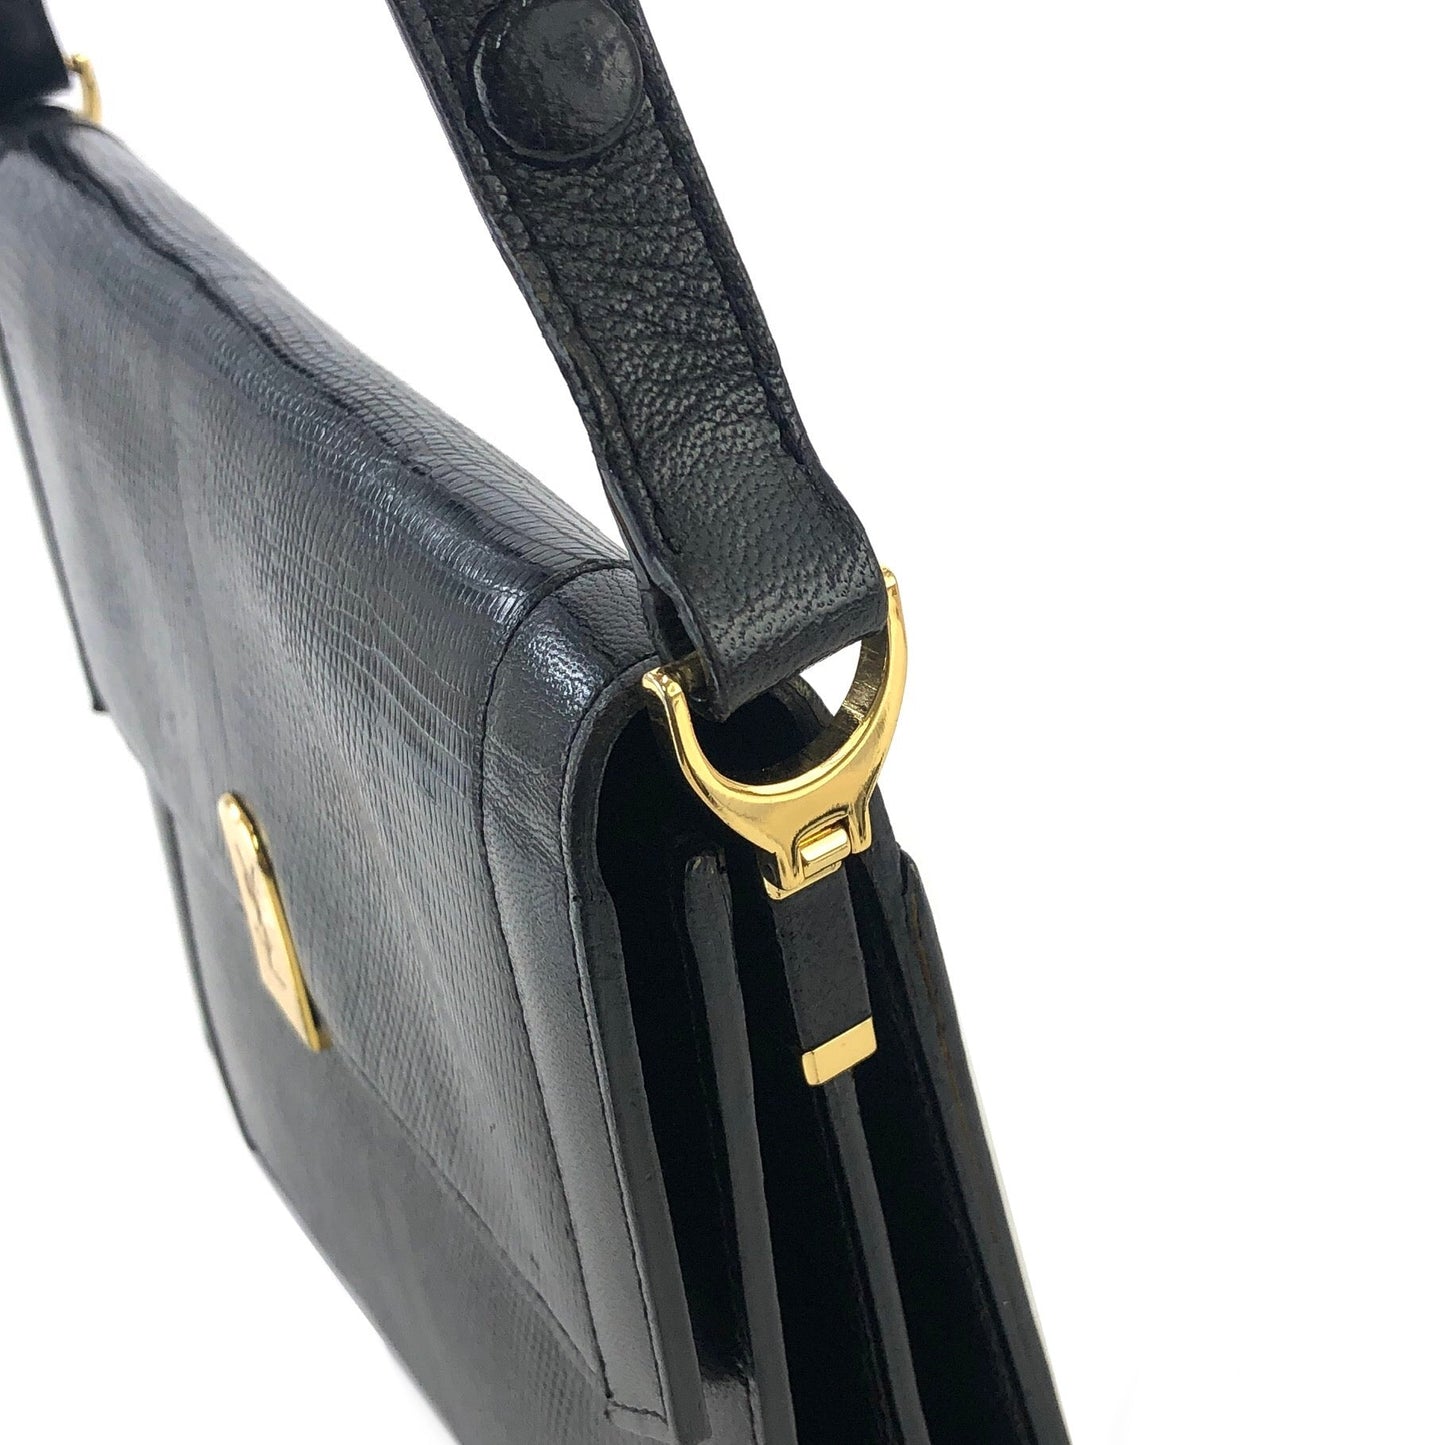 Yves Saint Laurent YSL Logo Lizard Embossed Two-way Shoulder bag Handbag Black Vintage Old f23f2e